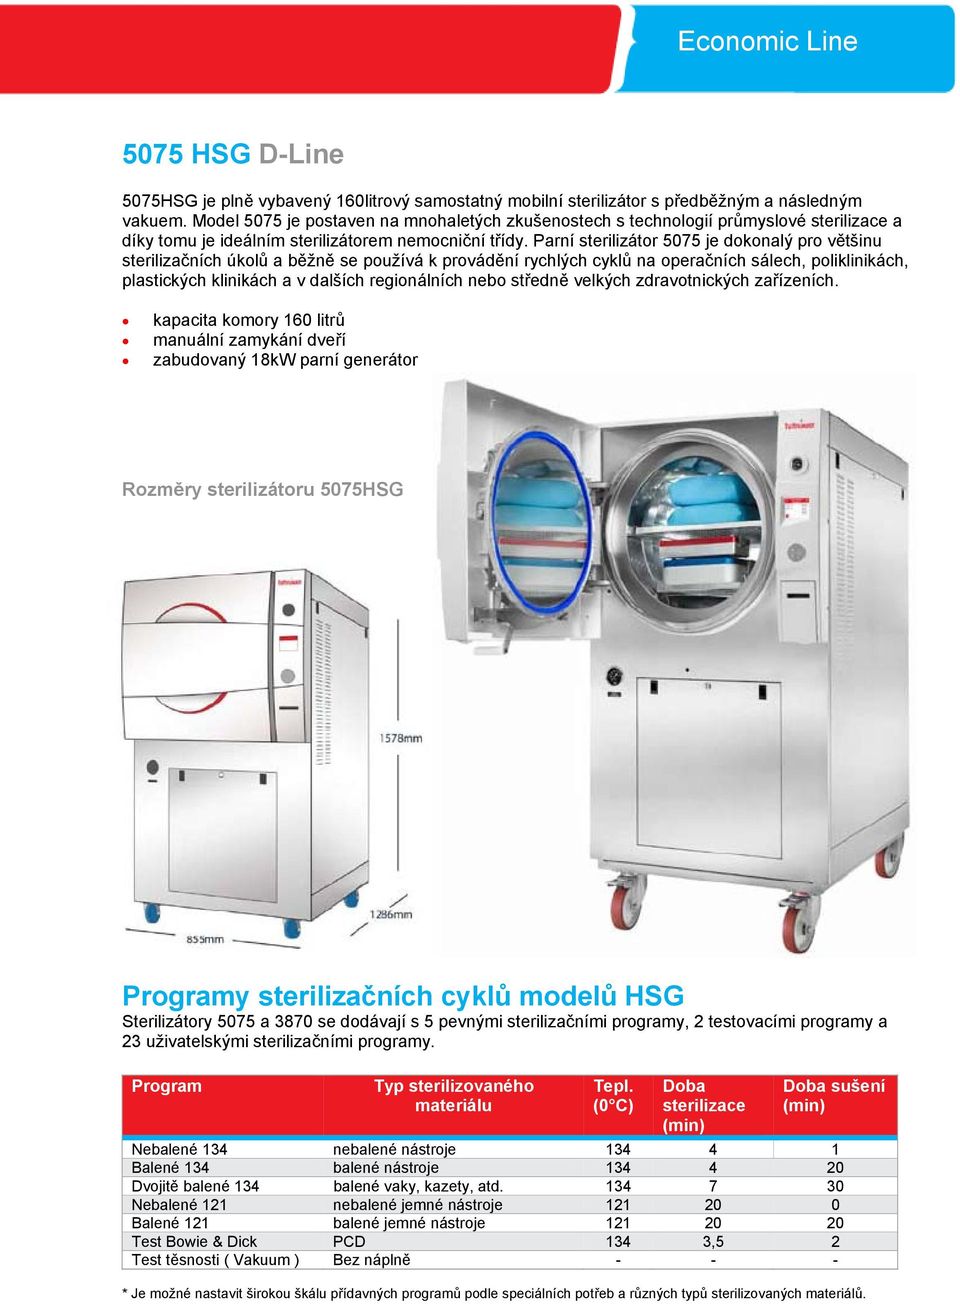 Parní sterilizátor 5075 je dokonalý pro většinu sterilizačních úkolů a běžně se používá k provádění rychlých cyklů na operačních sálech, poliklinikách, plastických klinikách a v dalších regionálních